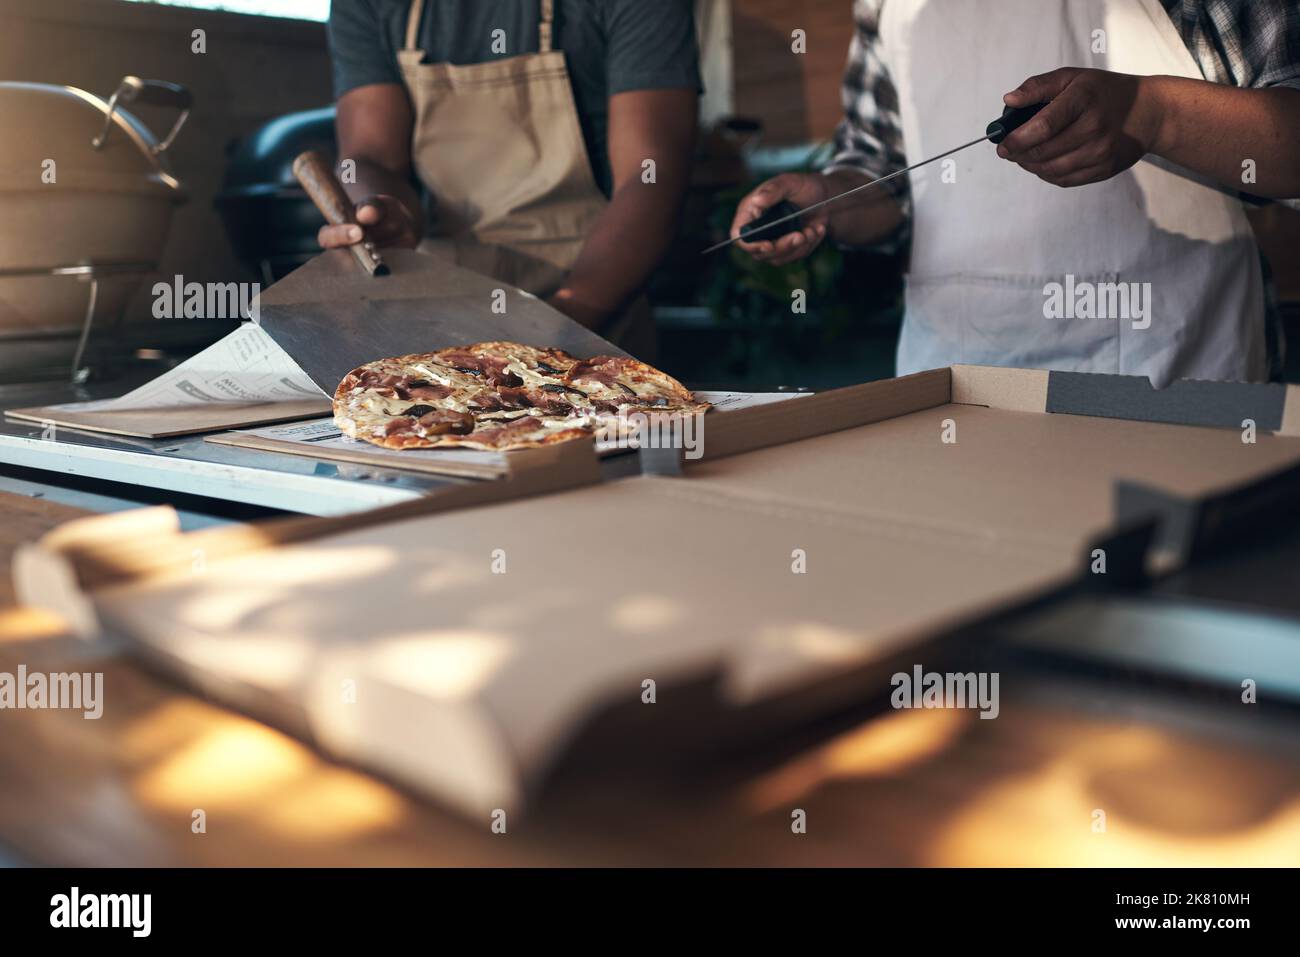 Eine heiße Pizza kommt gleich nach oben. Zwei unkenntliche Männer stehen und bereiten in ihrem Restaurant eine frisch zubereitete Pizza zum Mitnehmen zu. Stockfoto